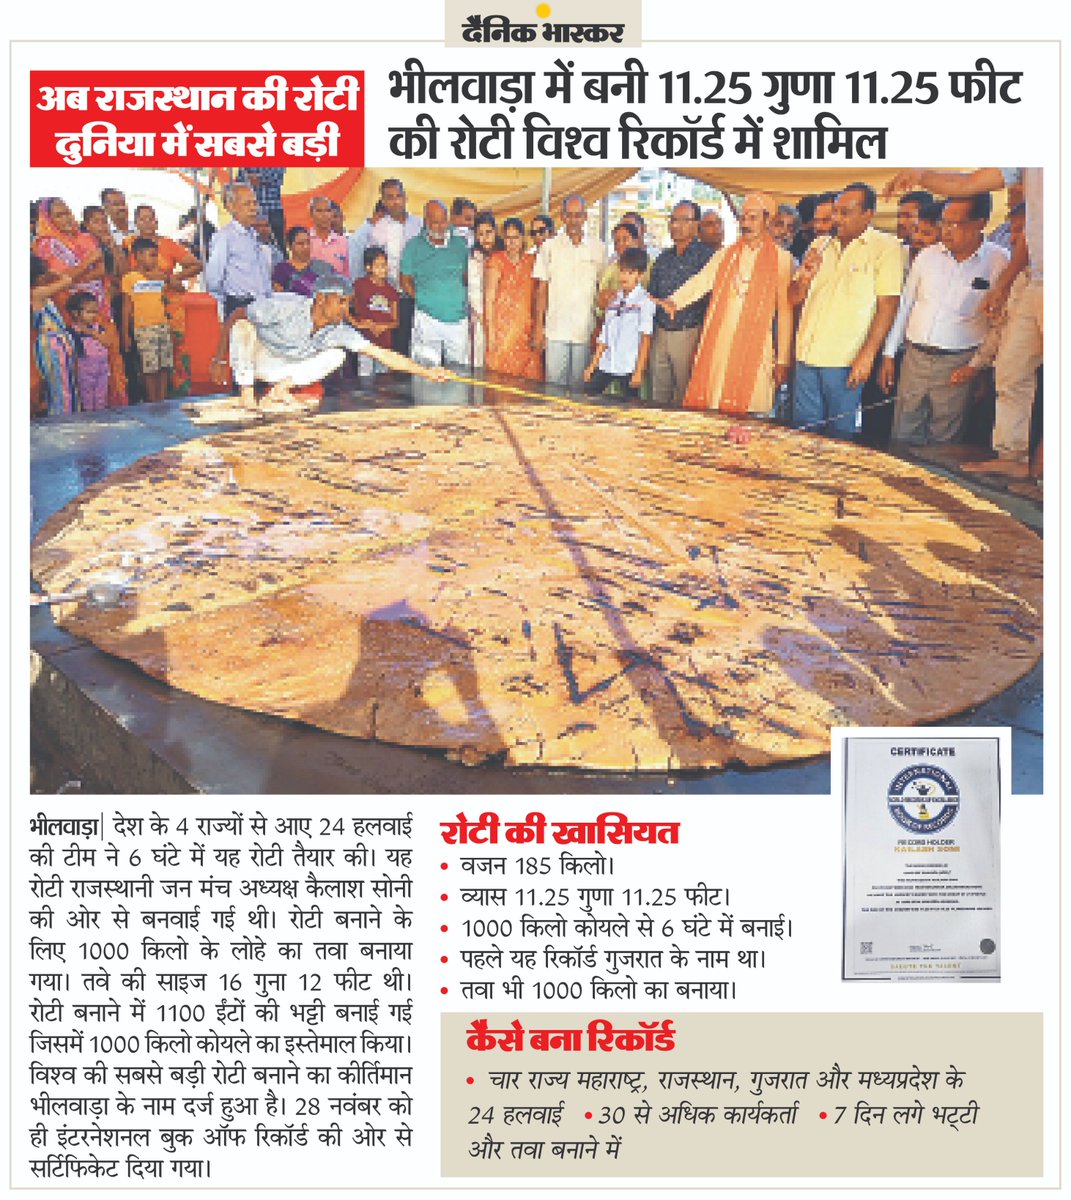 राजस्थान में 4 राज्यों के 24 हलवाइयों ने बनाई दुनिया की सबसे बड़ी रोटी, वर्ल्ड रिकॉर्ड में दर्ज हुआ कीर्तिमान #InternationalBookOfRecords #Rajasthan #Bhilwara अधिक खबरें और ई-पेपर पढ़ने के लिए दैनिक भास्कर ऐप इंस्टॉल करें - dainik-b.in/mjwzCSxDdsb